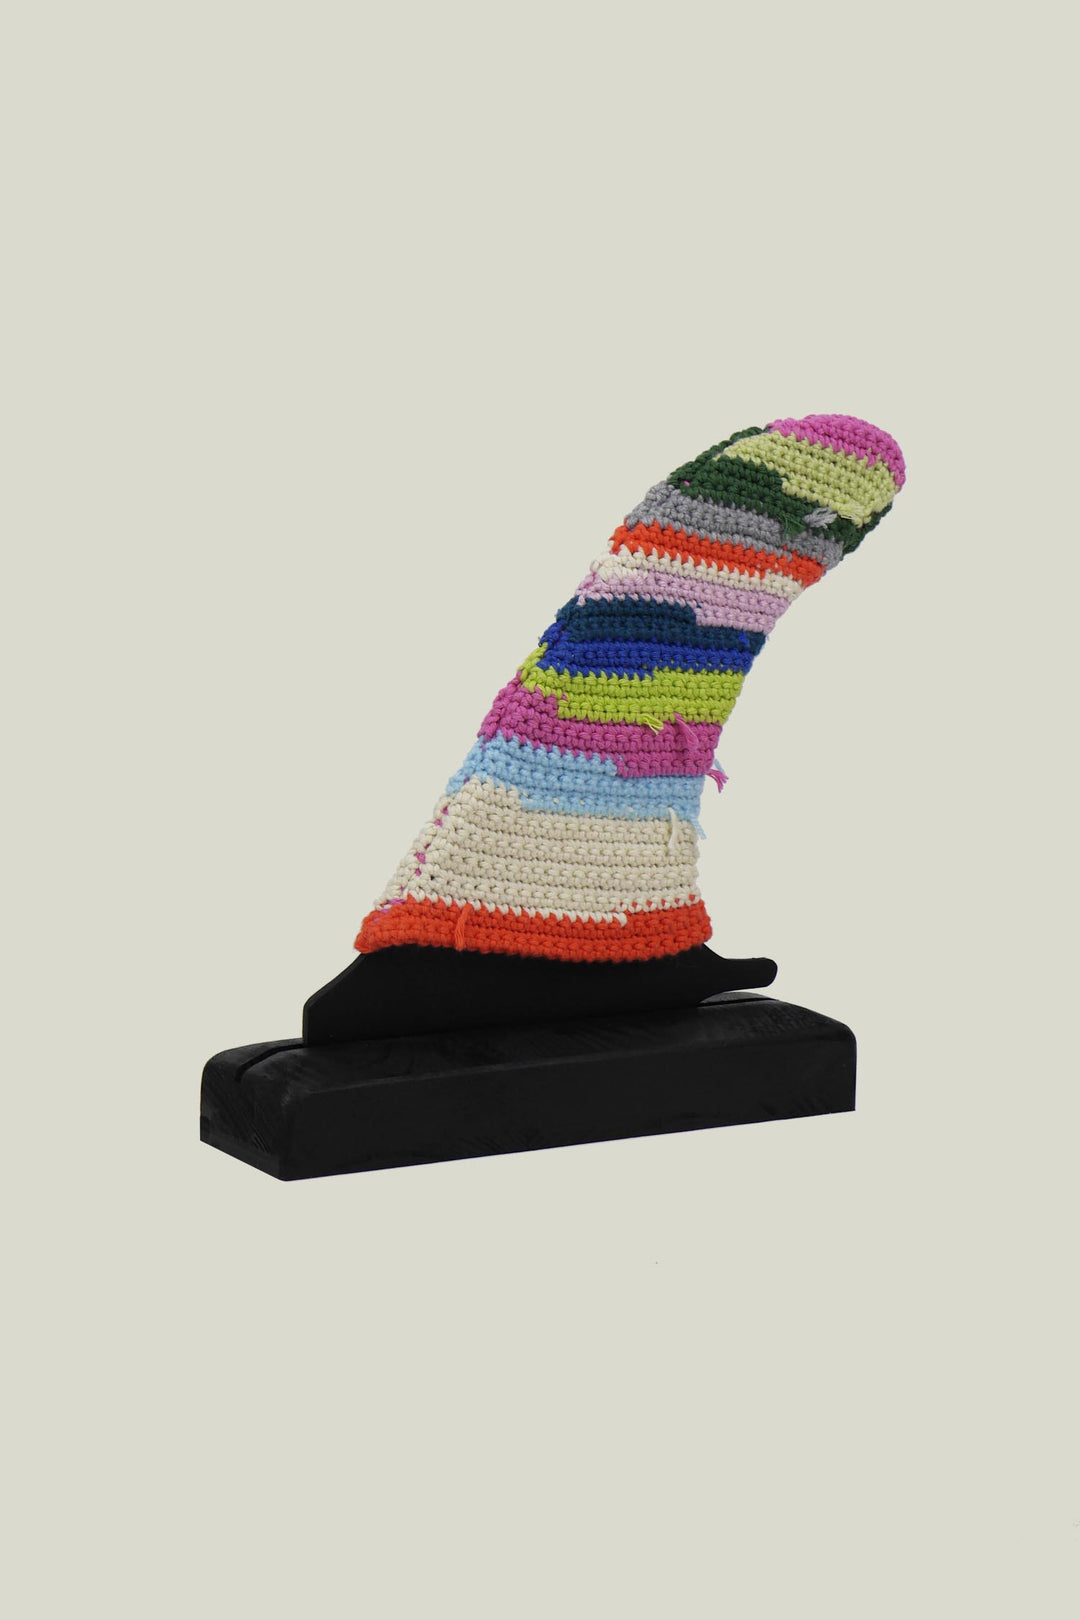 Zoé De Lune X Surfin Estate - Fin and multicolors crochet